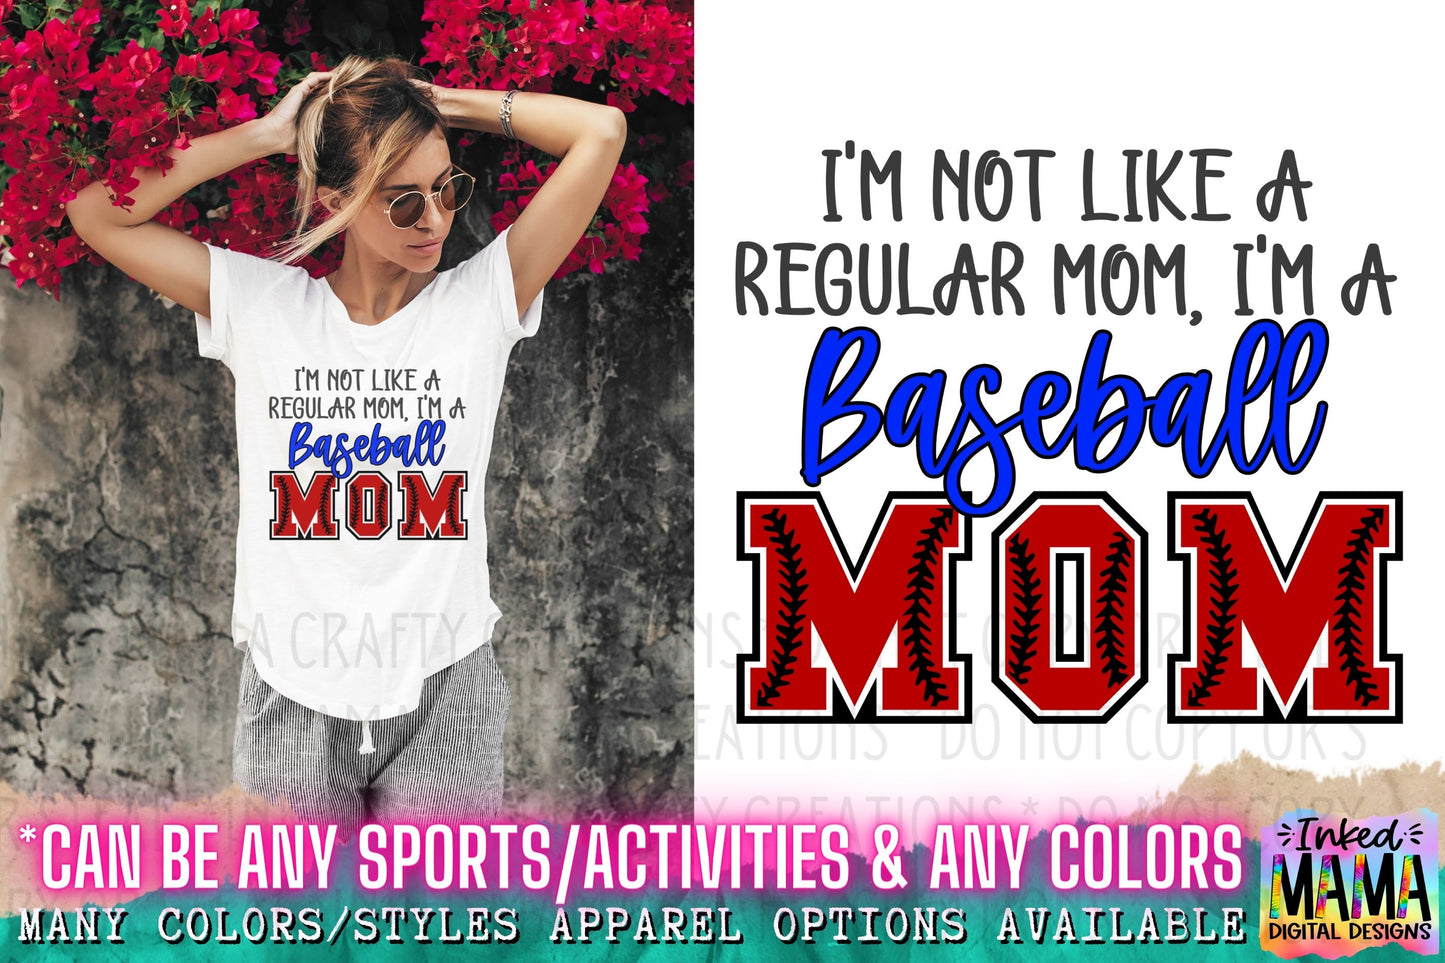 I'm not a regualar mom, I'm a baseball Mom (red/blue version) - School Spirit Apparel